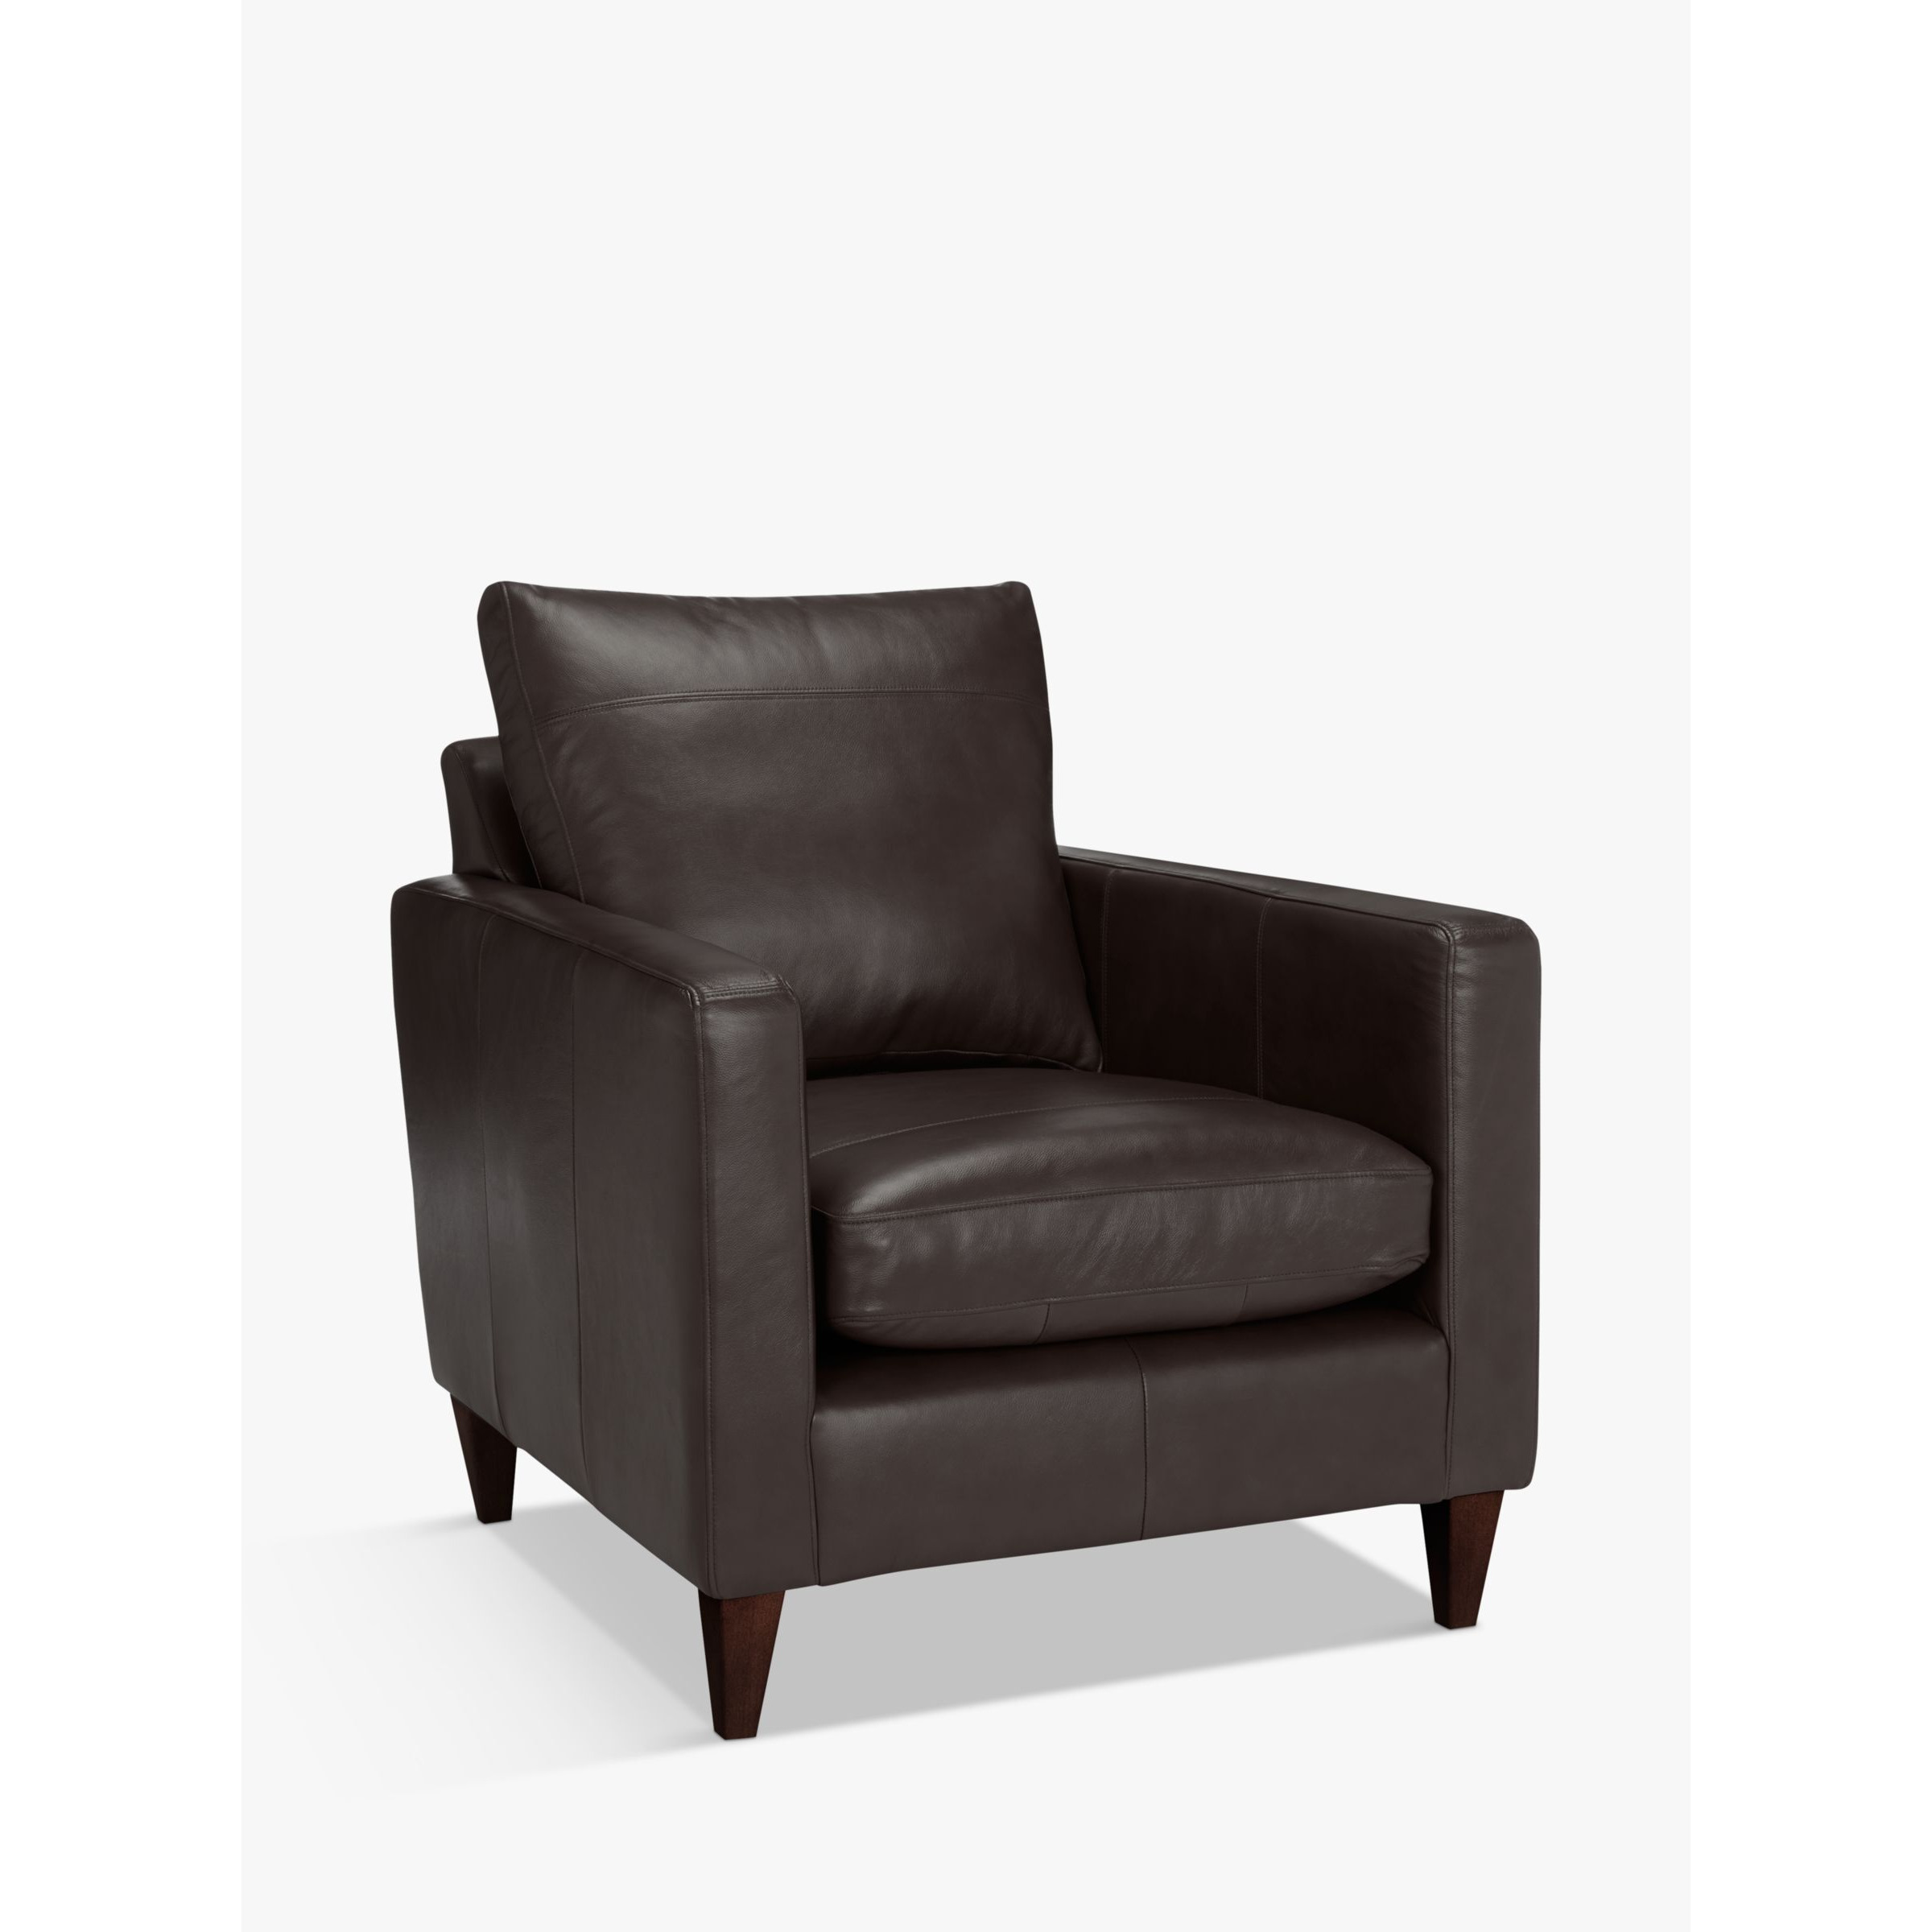 John Lewis Bailey Leather Armchair, Dark Leg - image 1